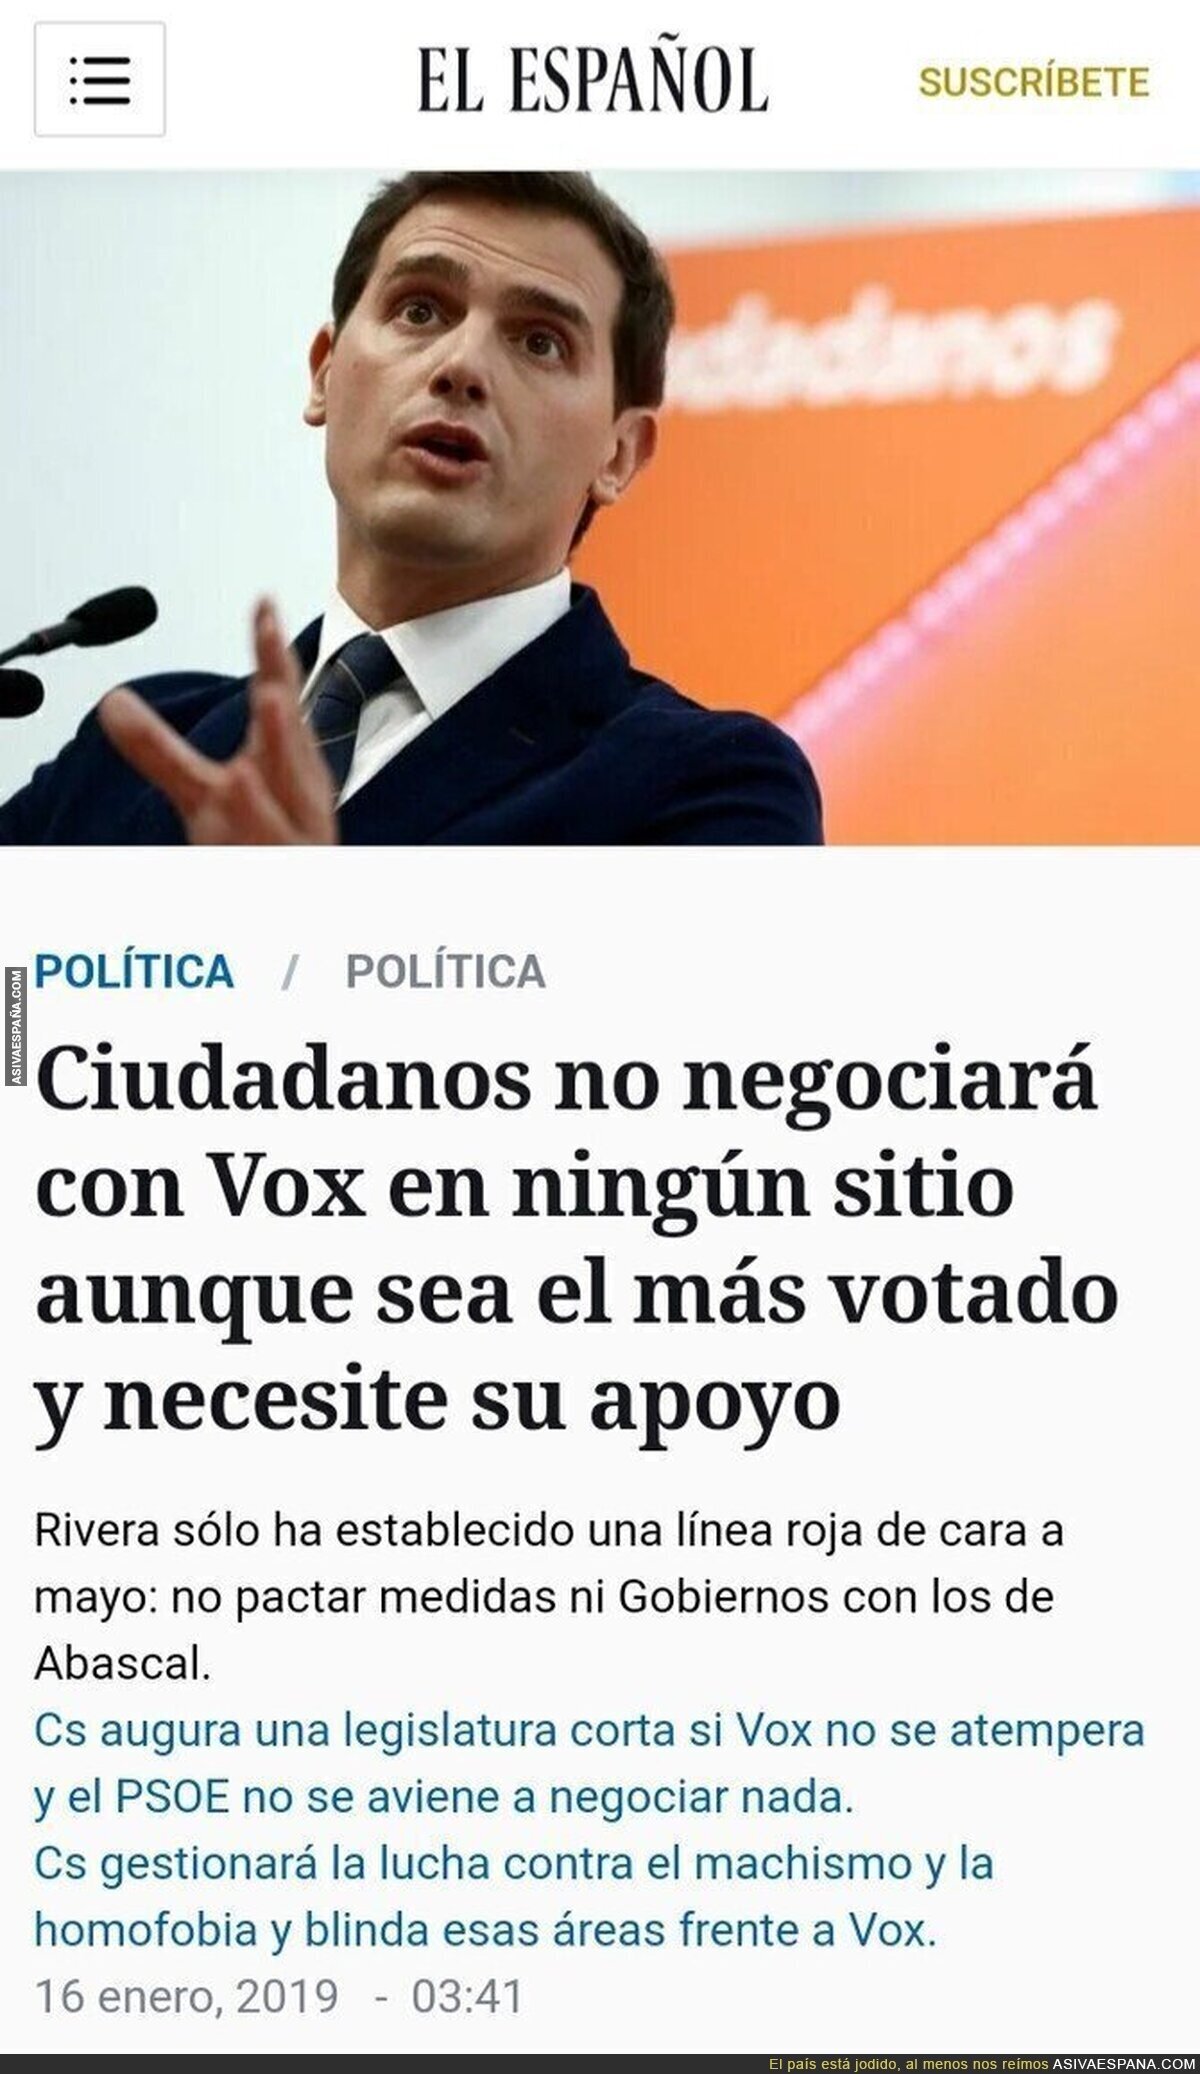 A "Alberto Primo de Rivera" no le gusta VOX. Tomamos nota.